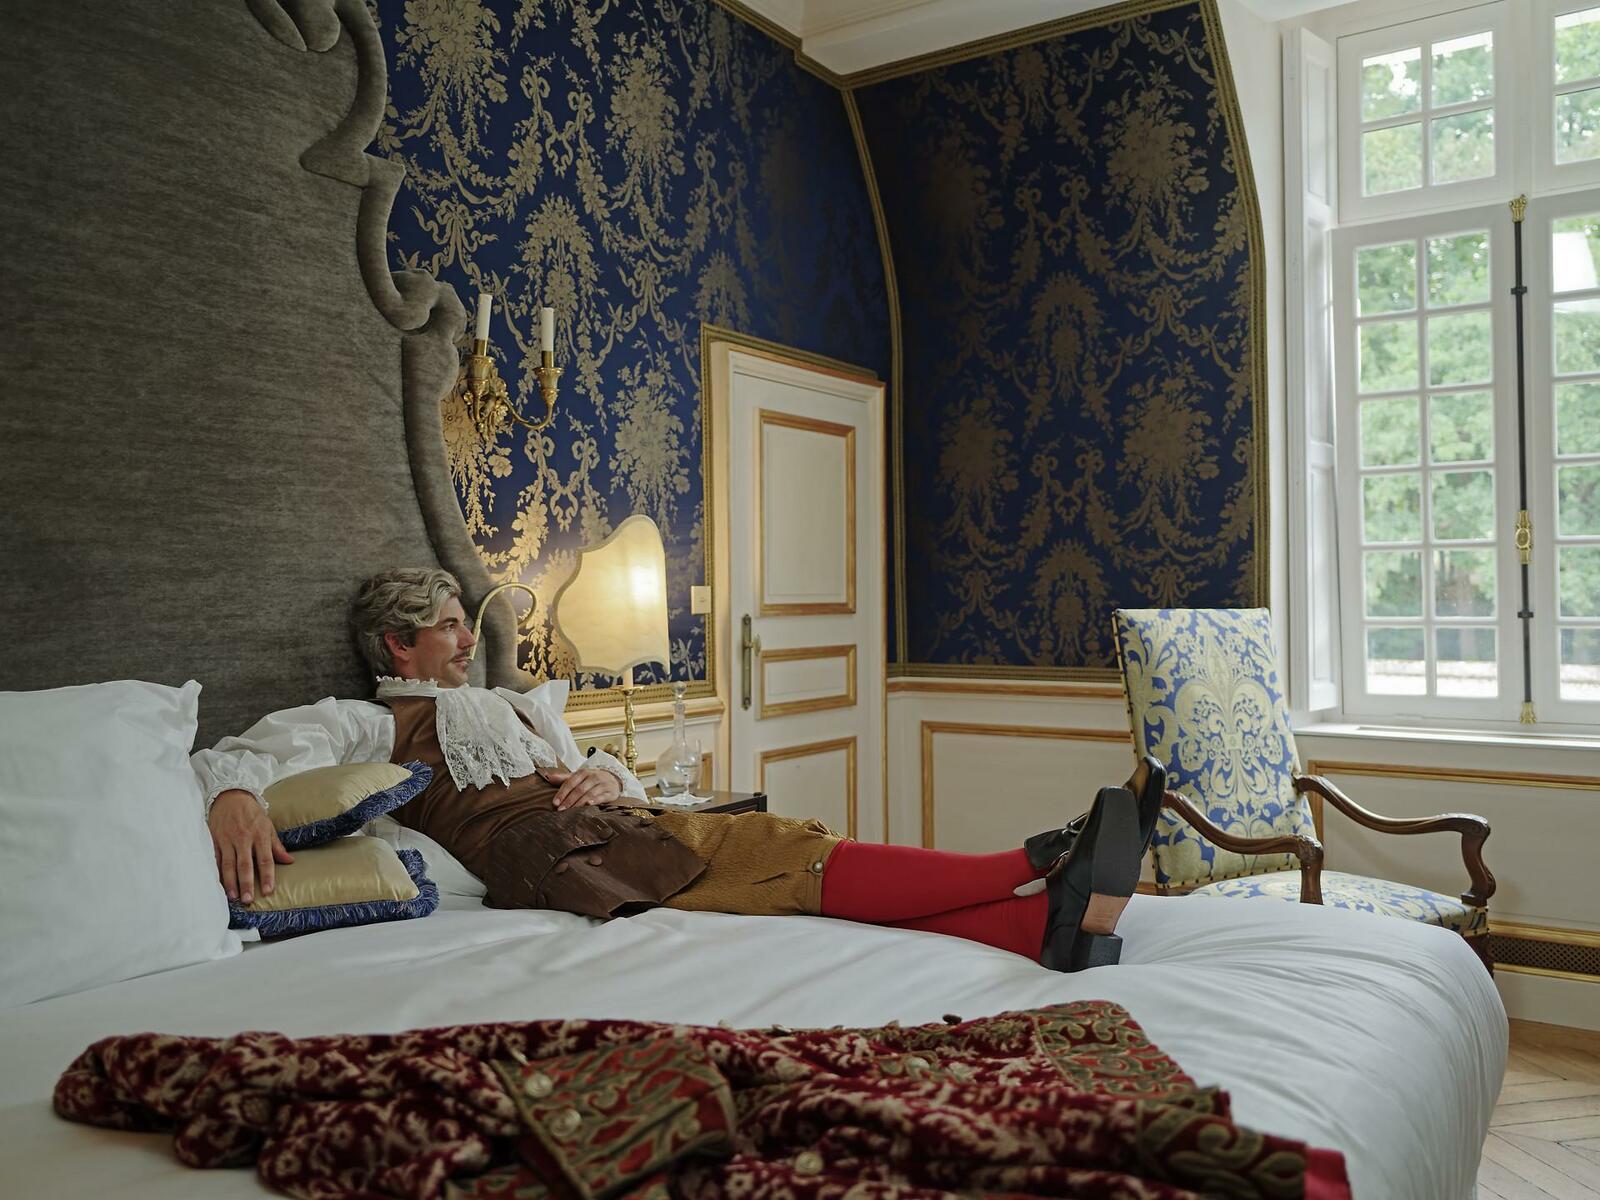 Barokk stílusban kialakított hálószoba a hotelen belül